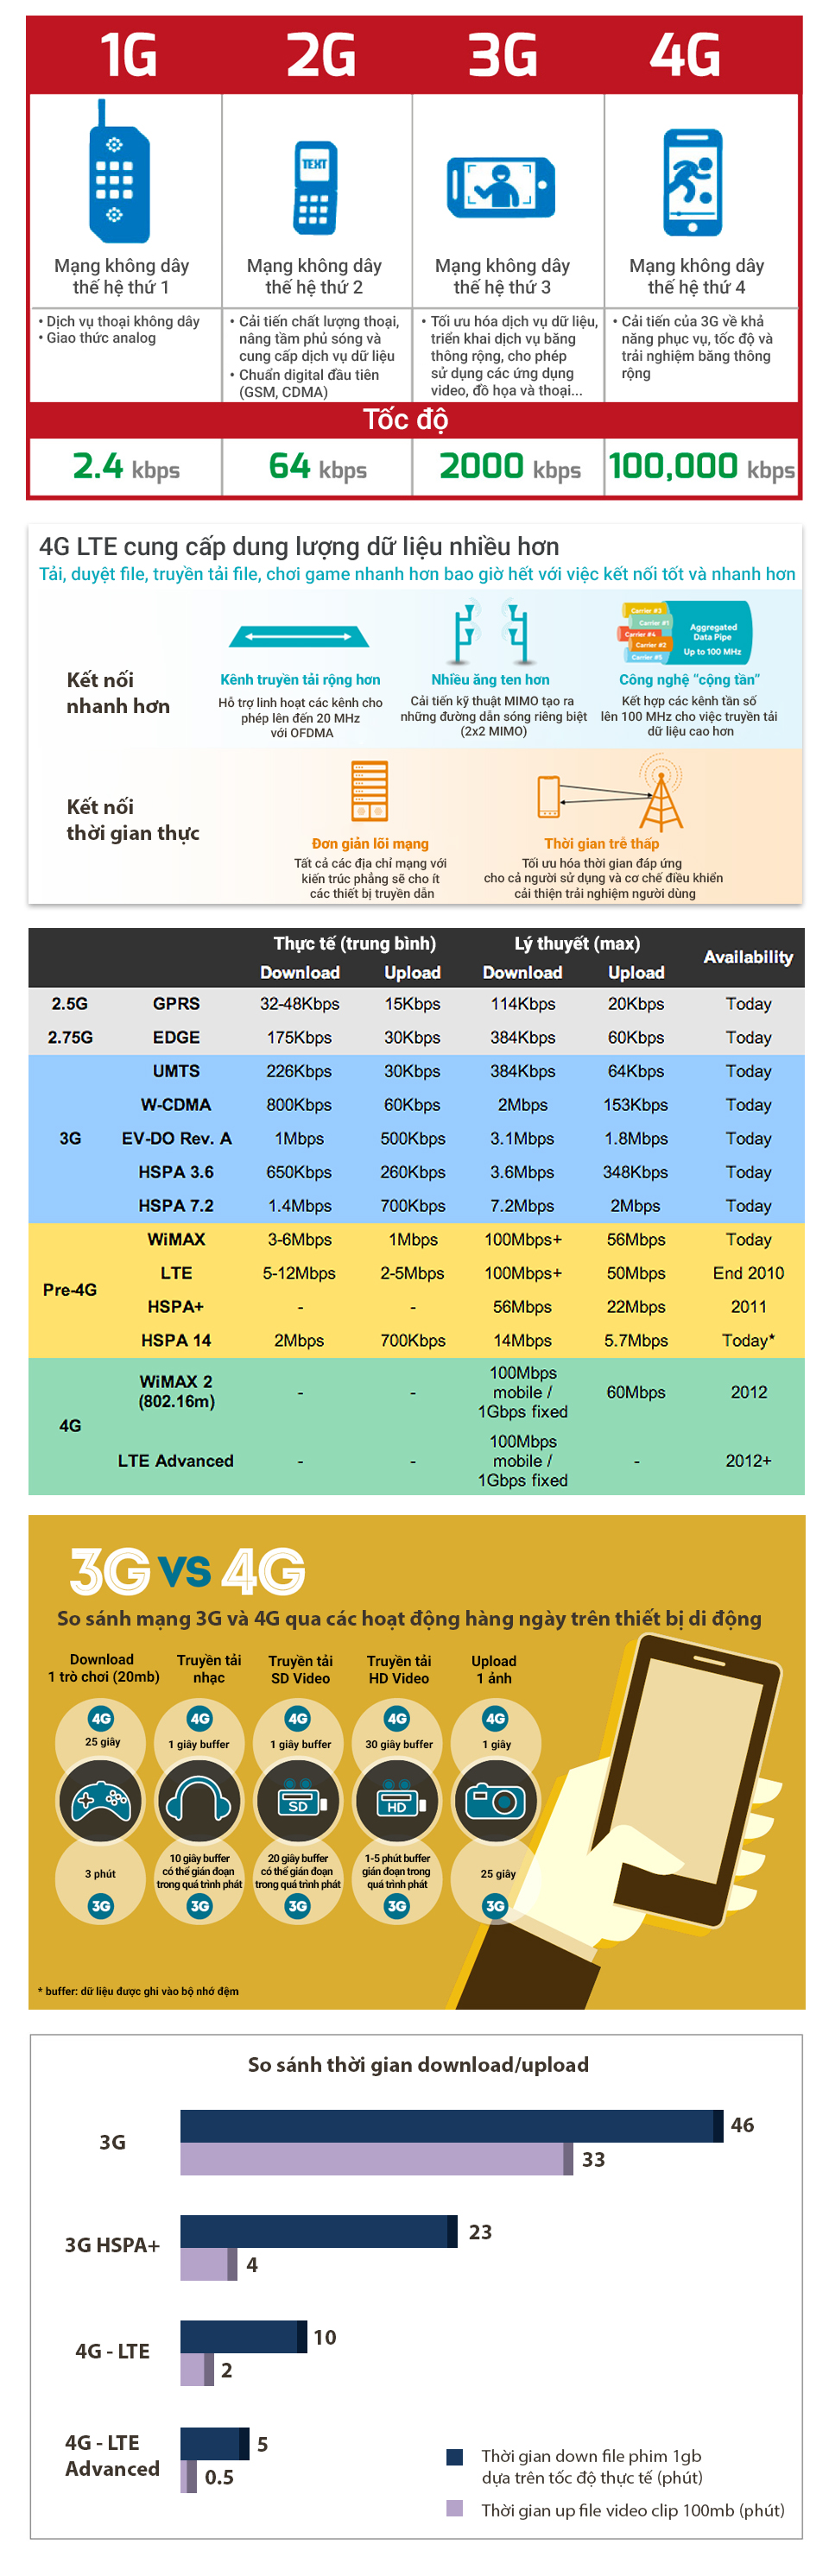 Ảnh đồ họa thông tin (infographic) tổng hợp về mạng 4G và sự khác biệt của mạng 4G với 3G - Đồ họa: Việt Thái - Nguồn: tổng hợp